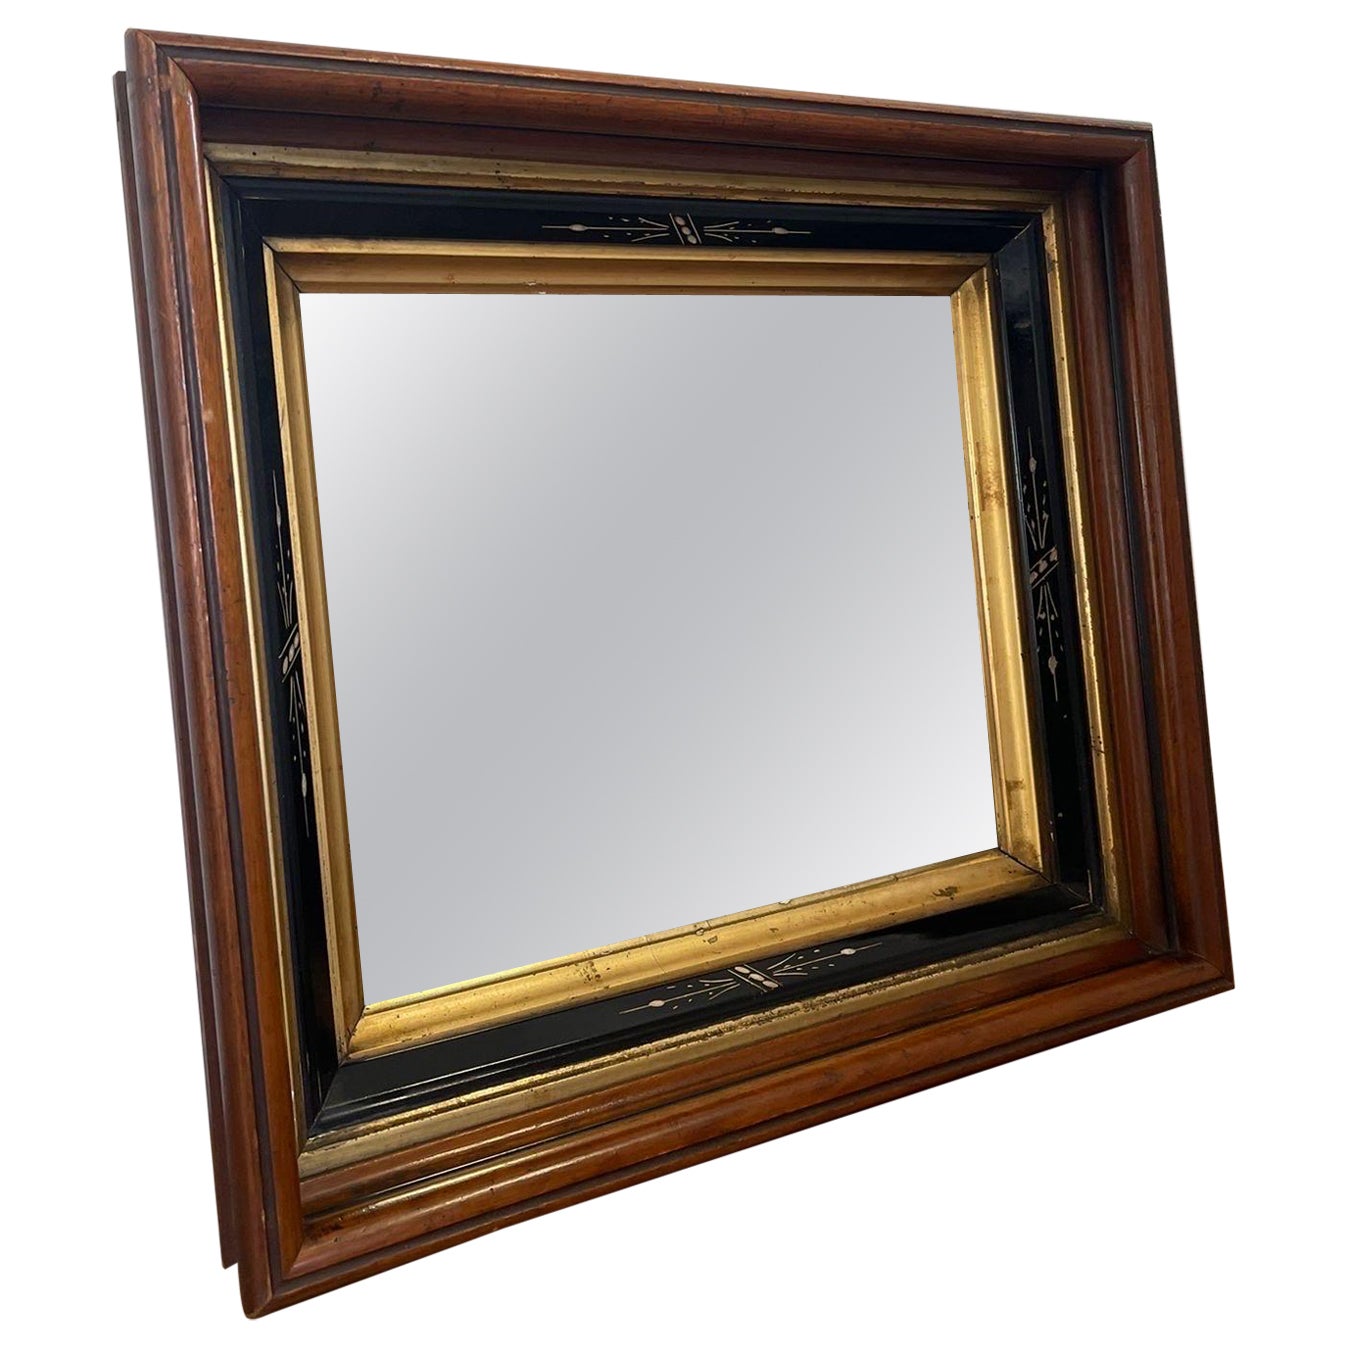 Miroir vintage avec cadre en bois doré et accents peints à la main